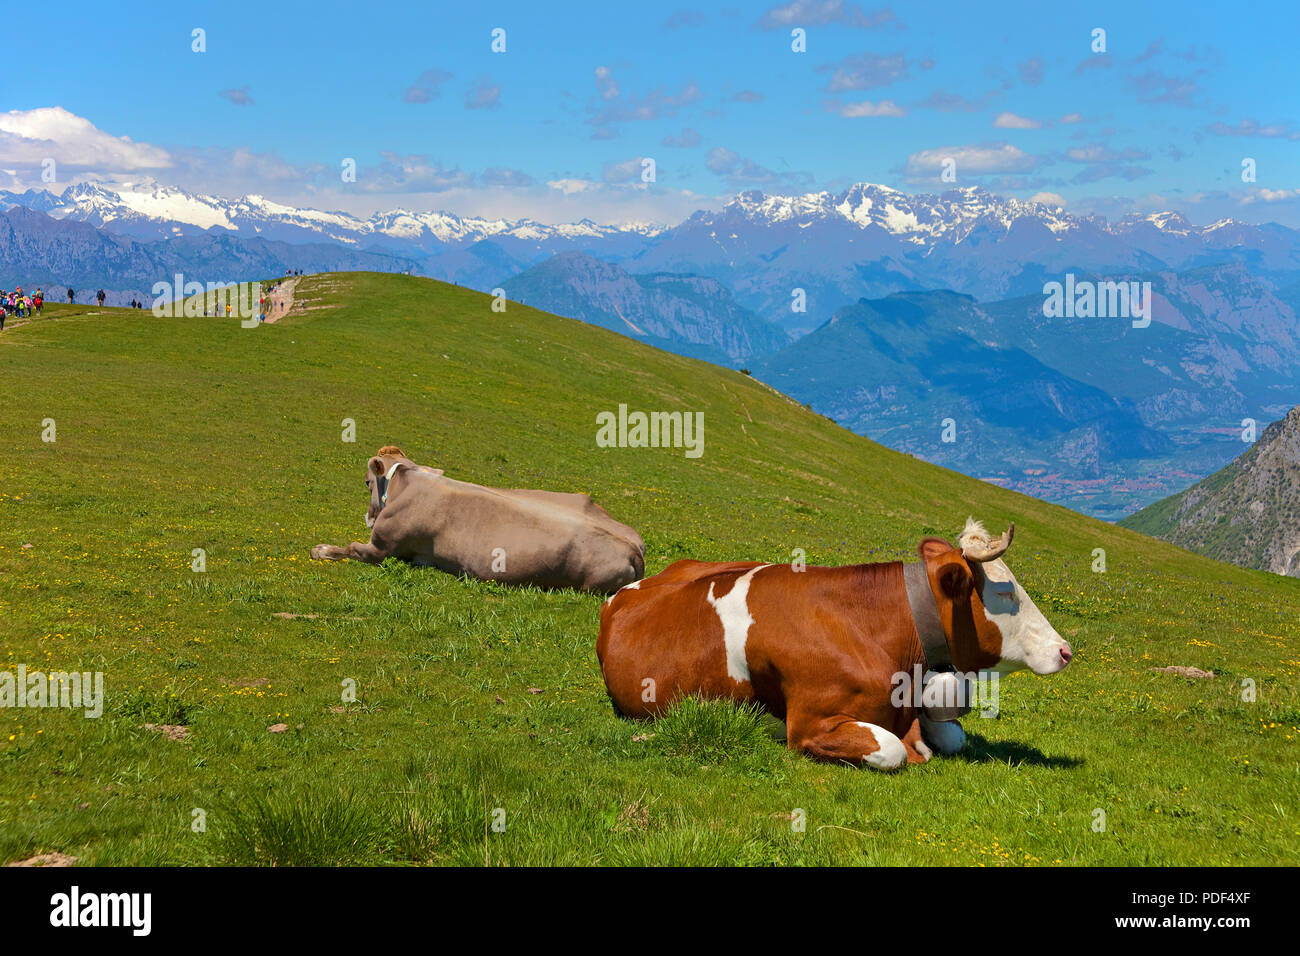 Vaches laitières sur sommet du Monte Baldo massif, Malcesine, province de Vérone, Lac de Garde, Lombardie, Italie Banque D'Images